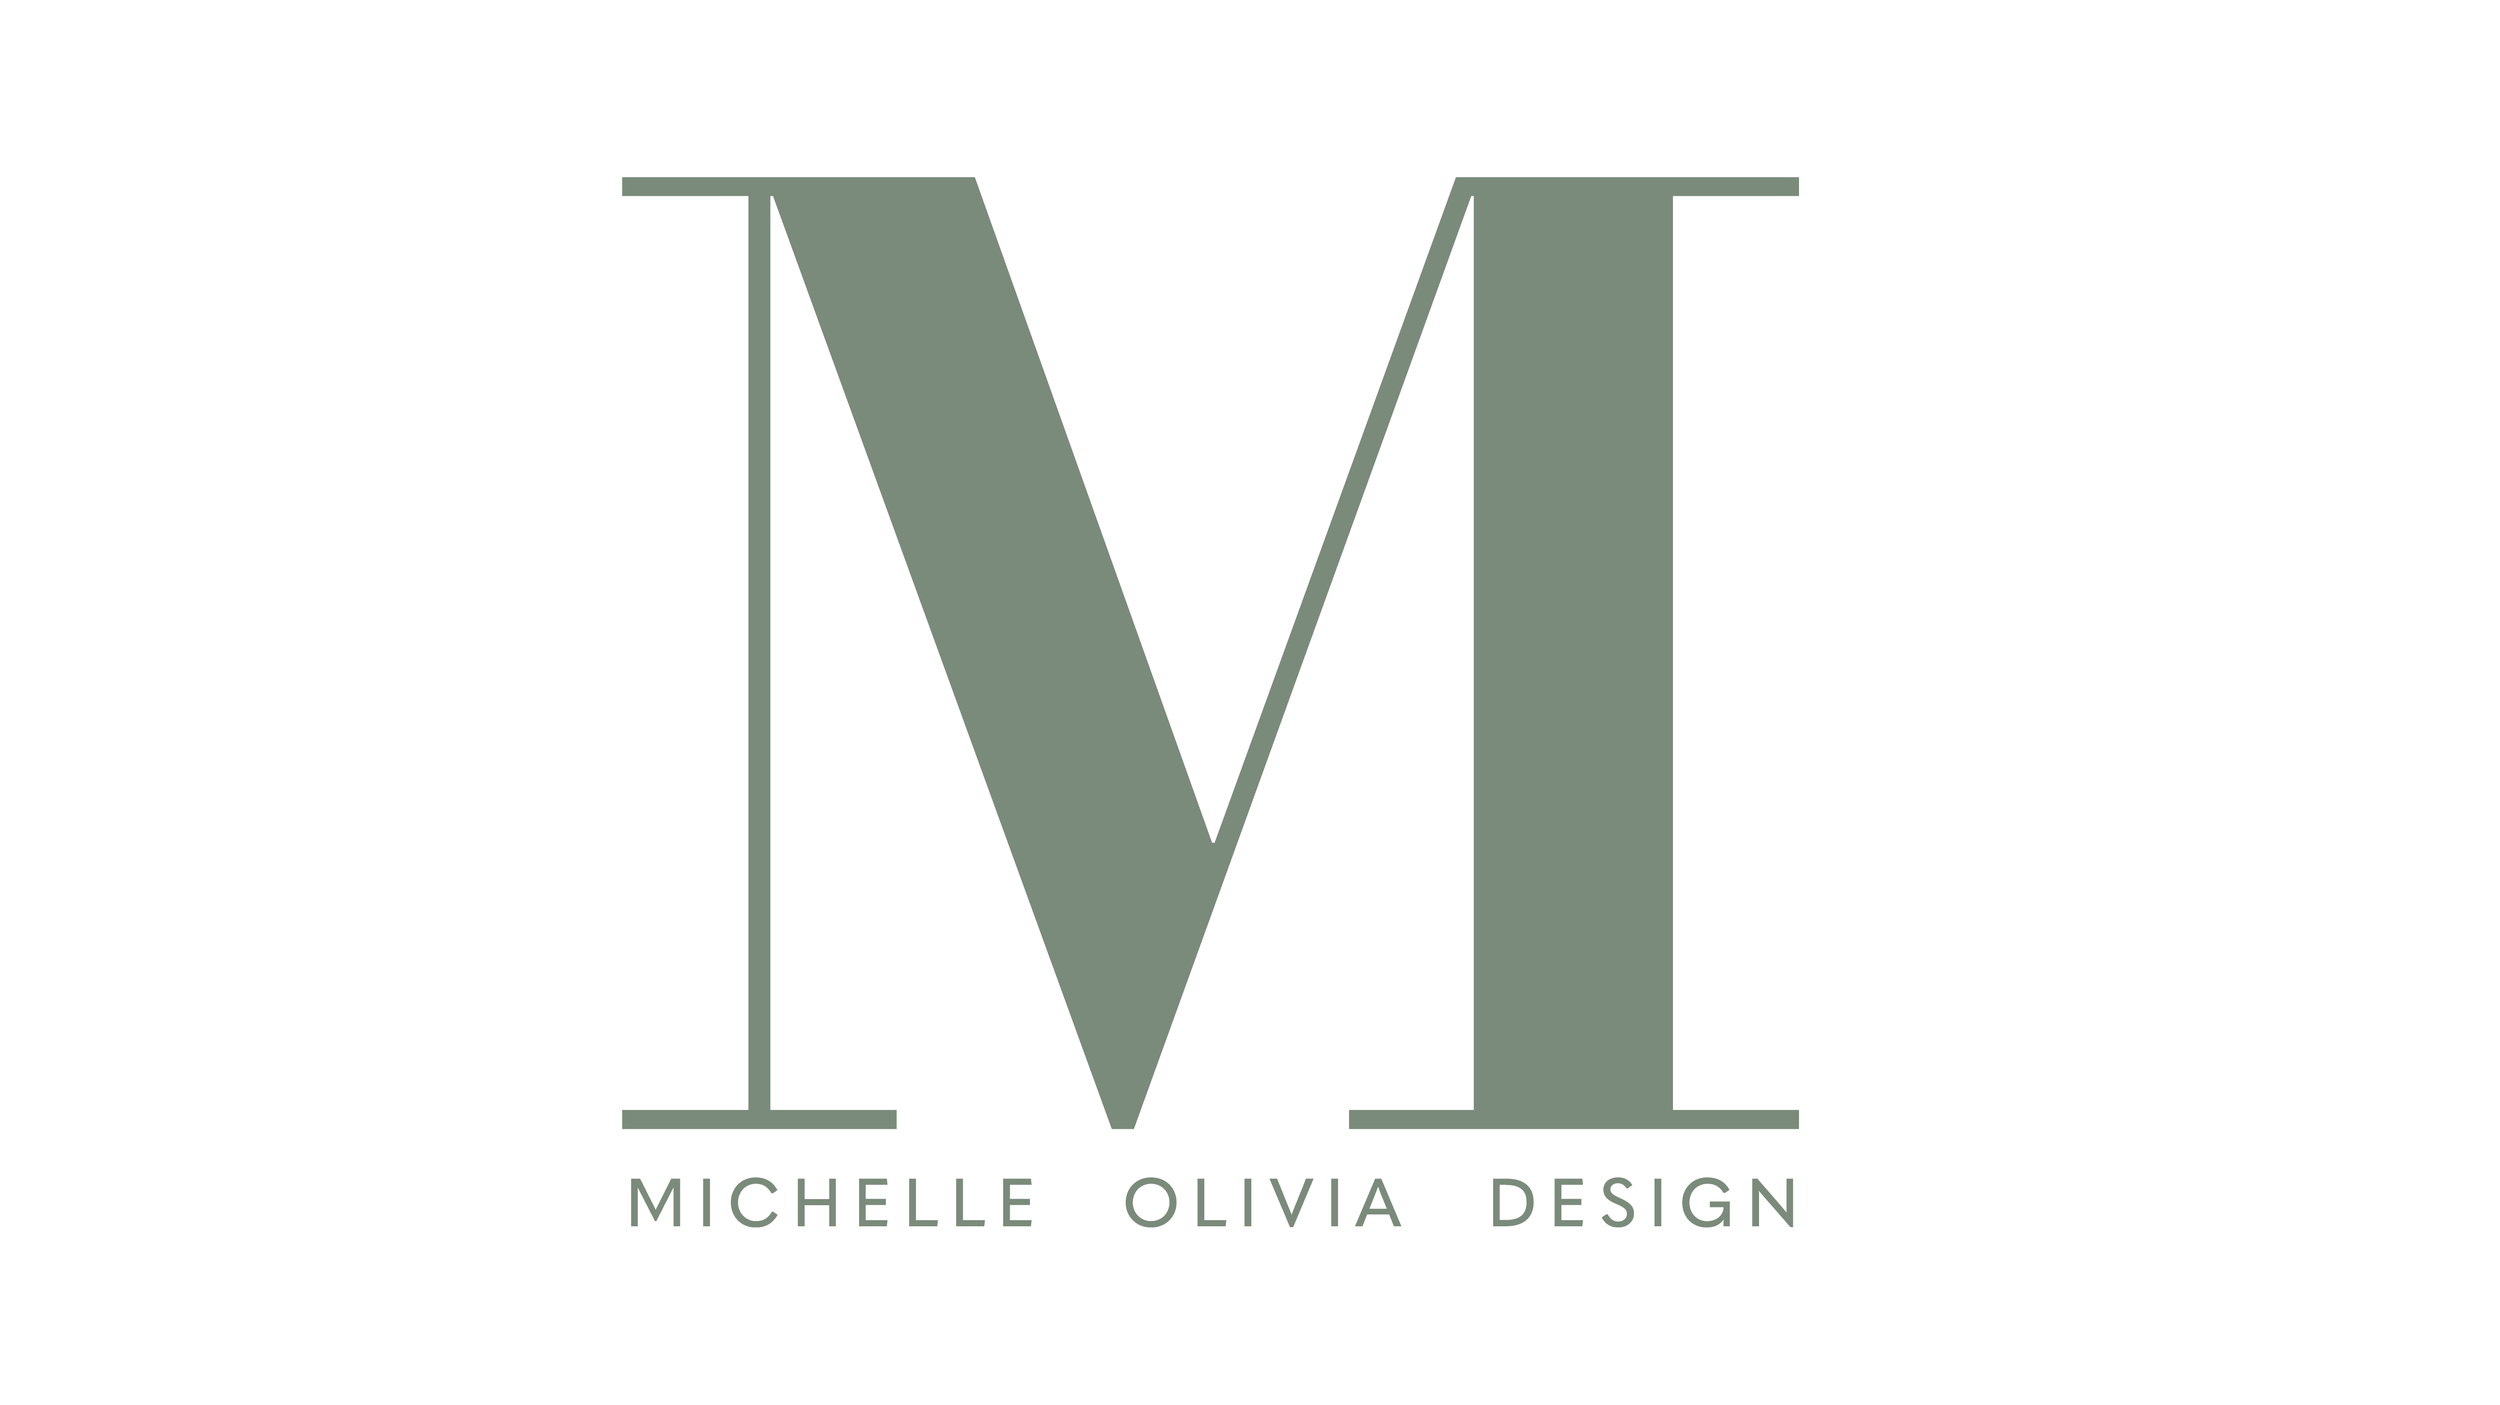 Michelle Olivia Design